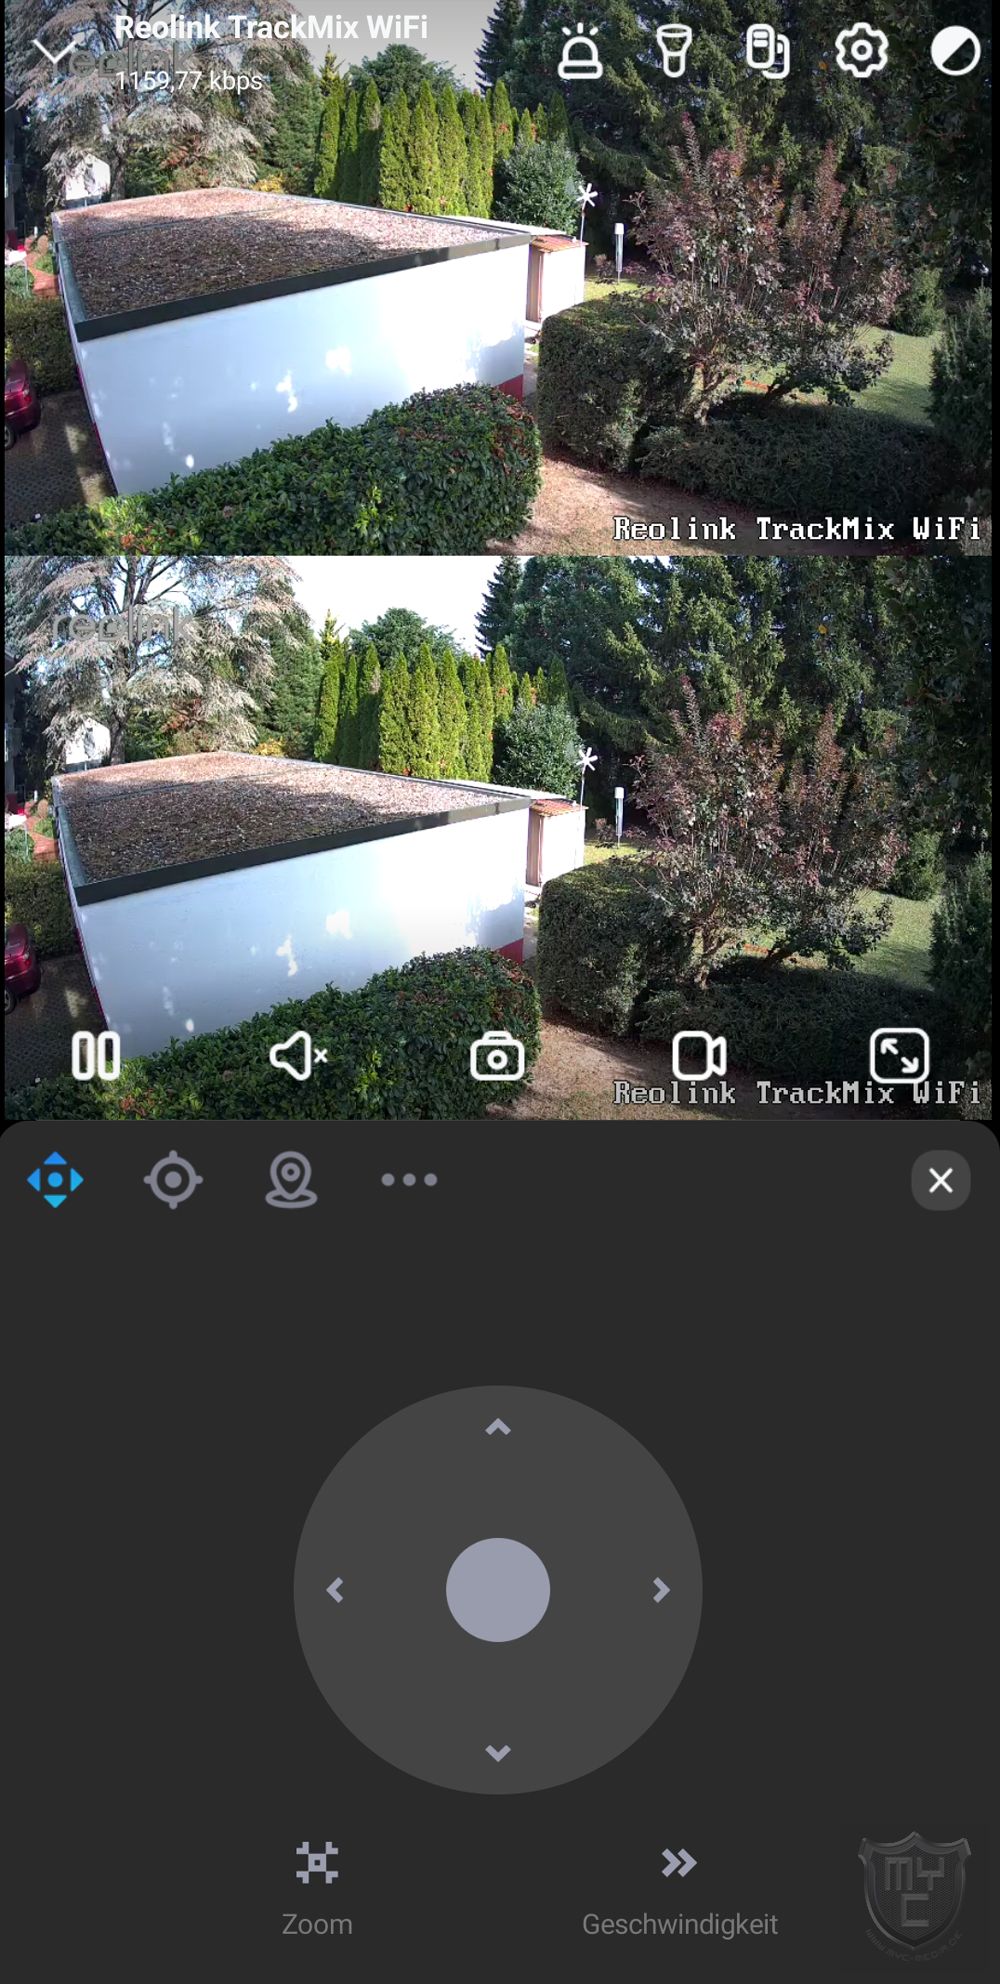 RCL TrackMix WiFi 4K Dual-Kamera mit Auto Zoom & Tracking